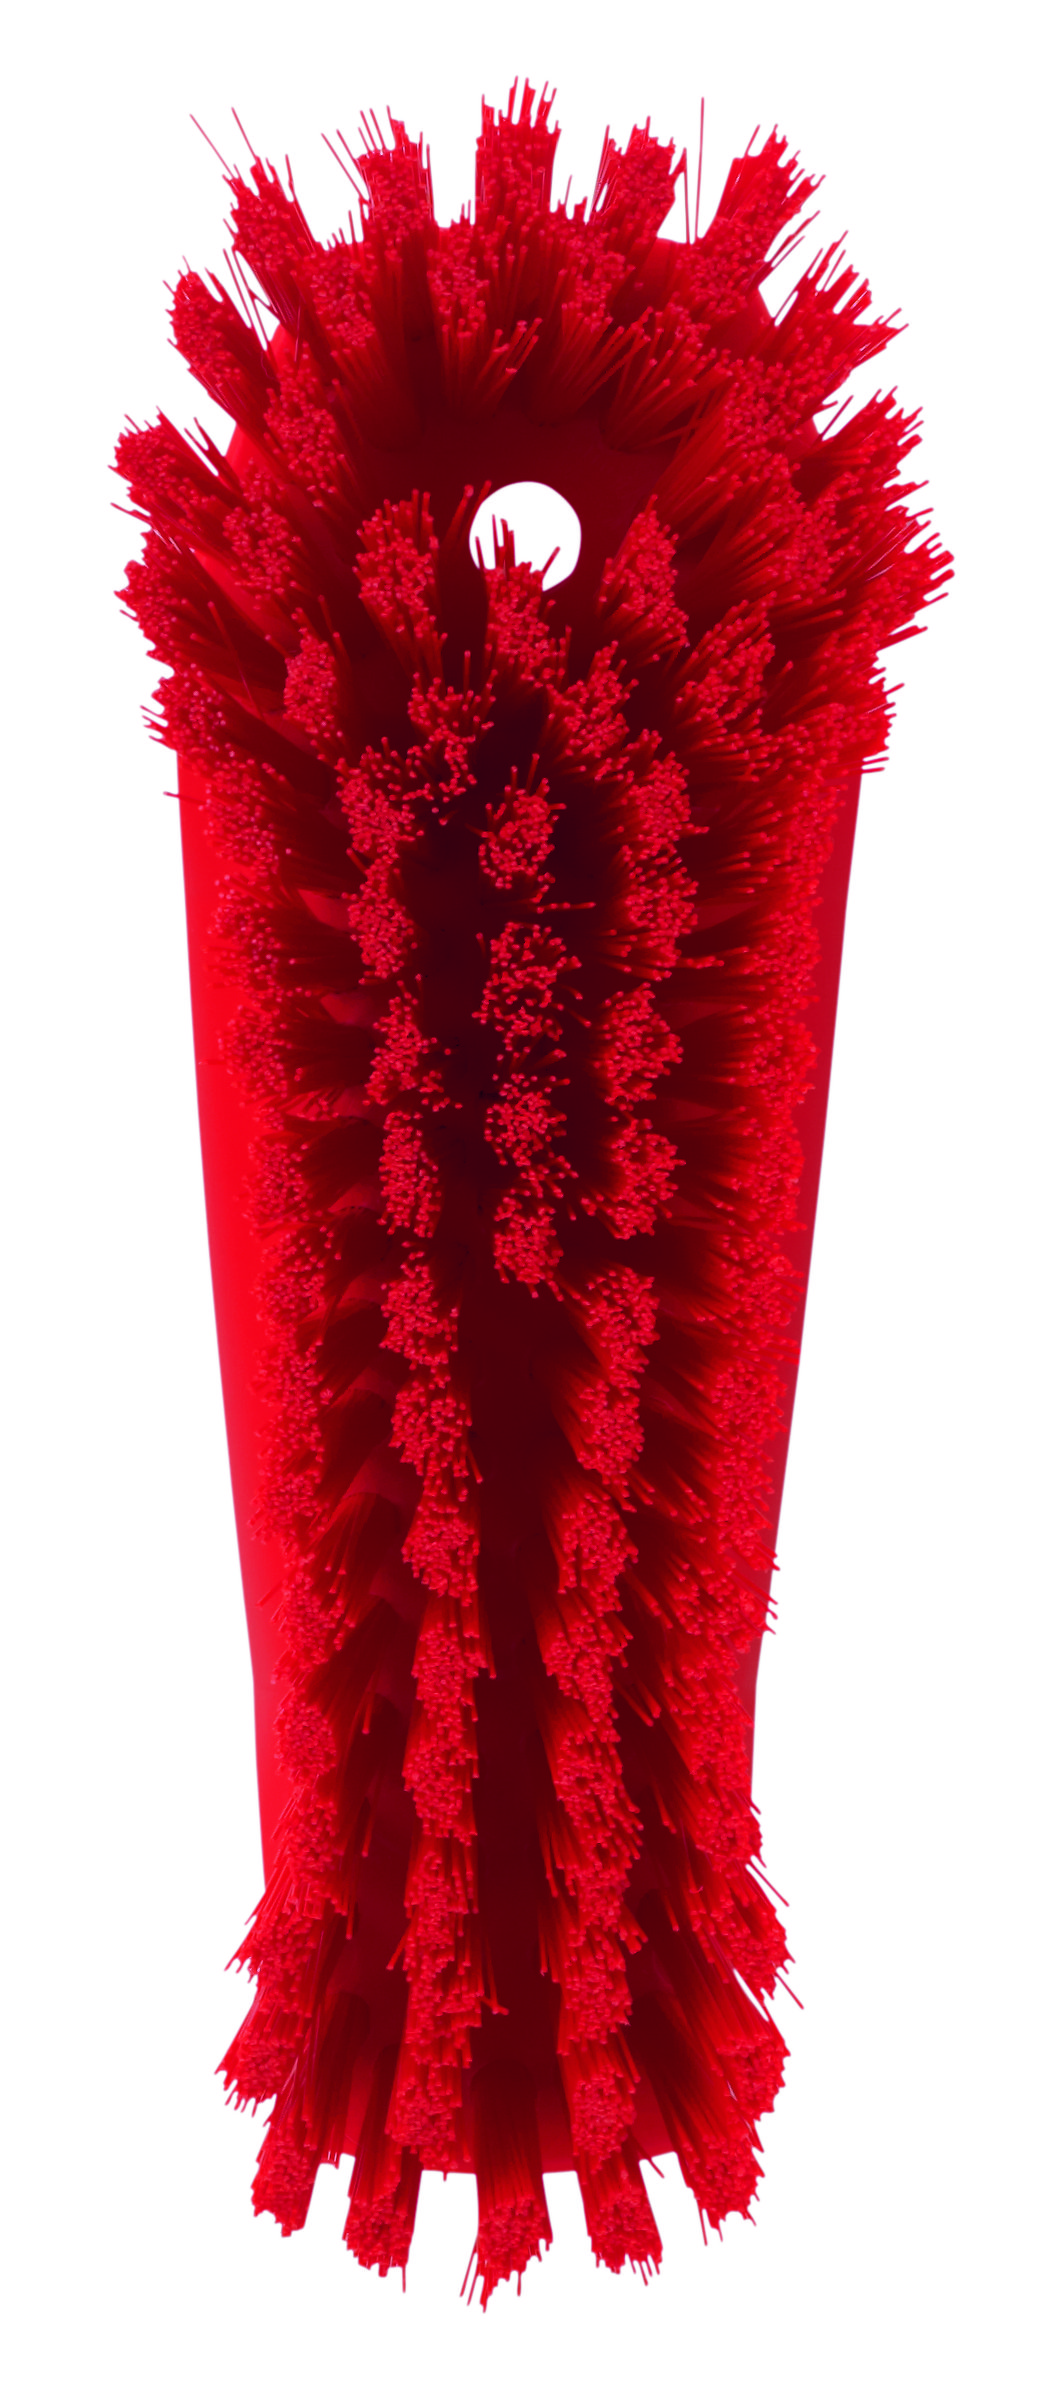 Щетка Vikan для мытья разделочных досок и рабочих поверхностей, жесткая, 200 мм, красная